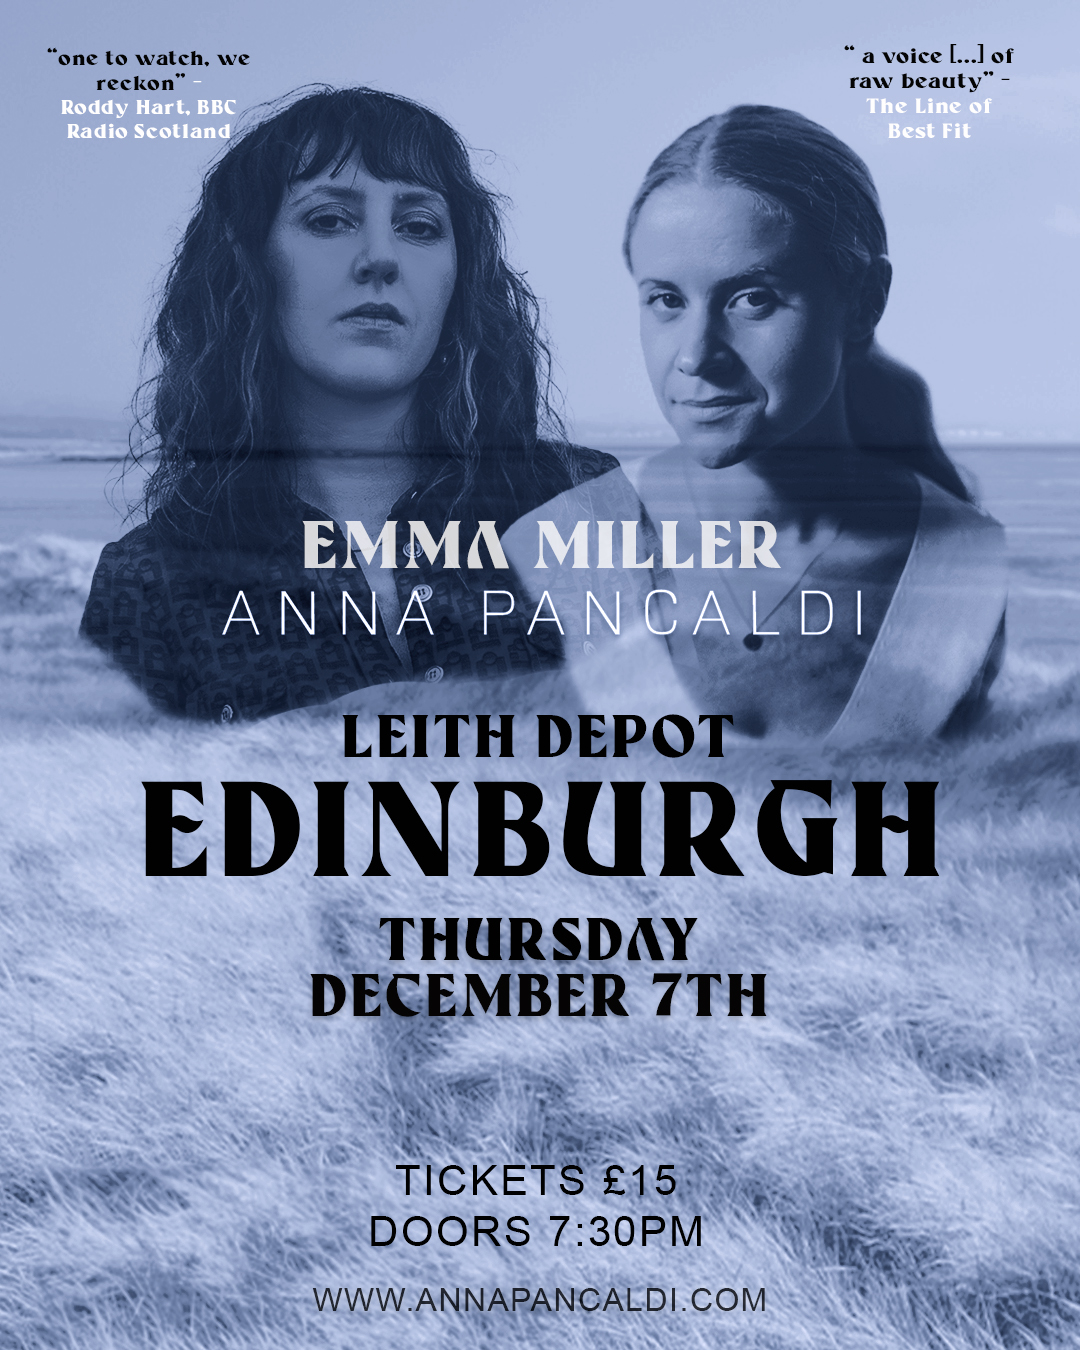 Emma Miller + Anna Pancaldi live Edinburgh